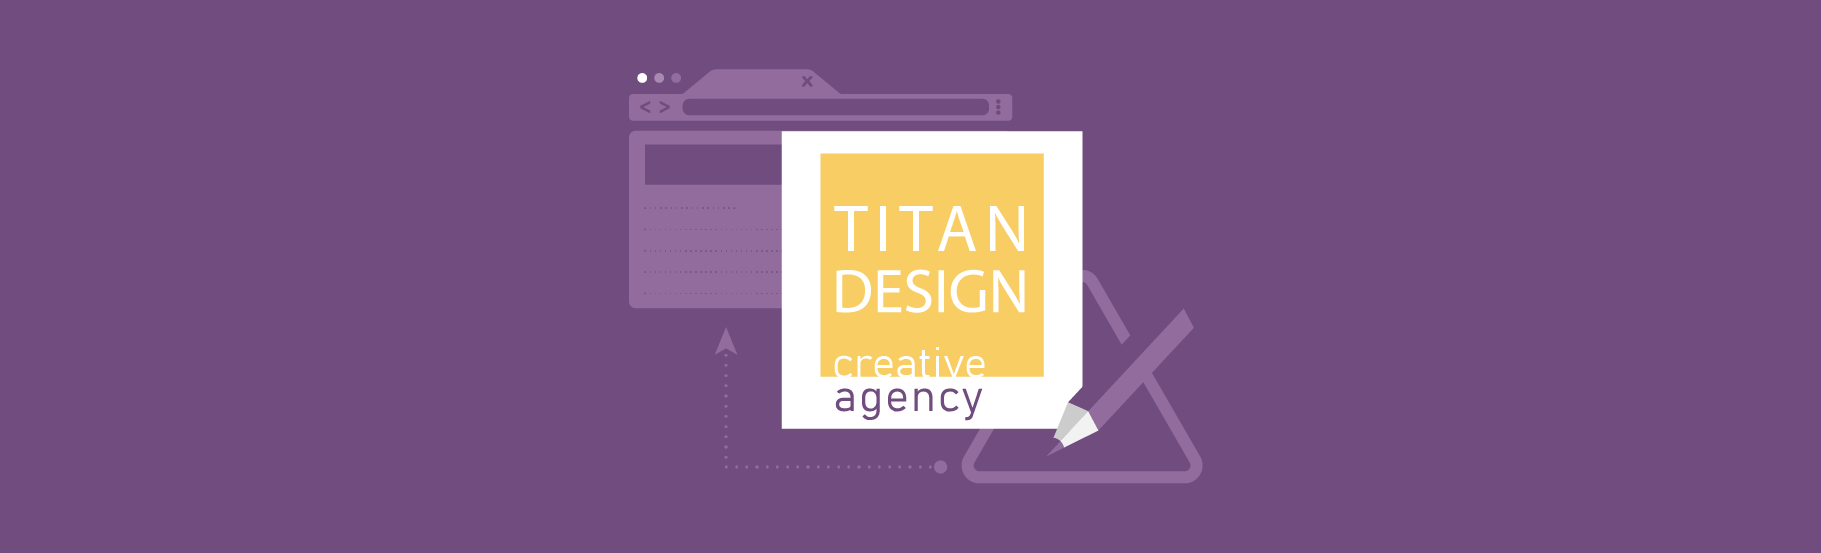 Titan dizajn agencije već godinama uspešno kreira veliki broj user friendly veb-sajtova